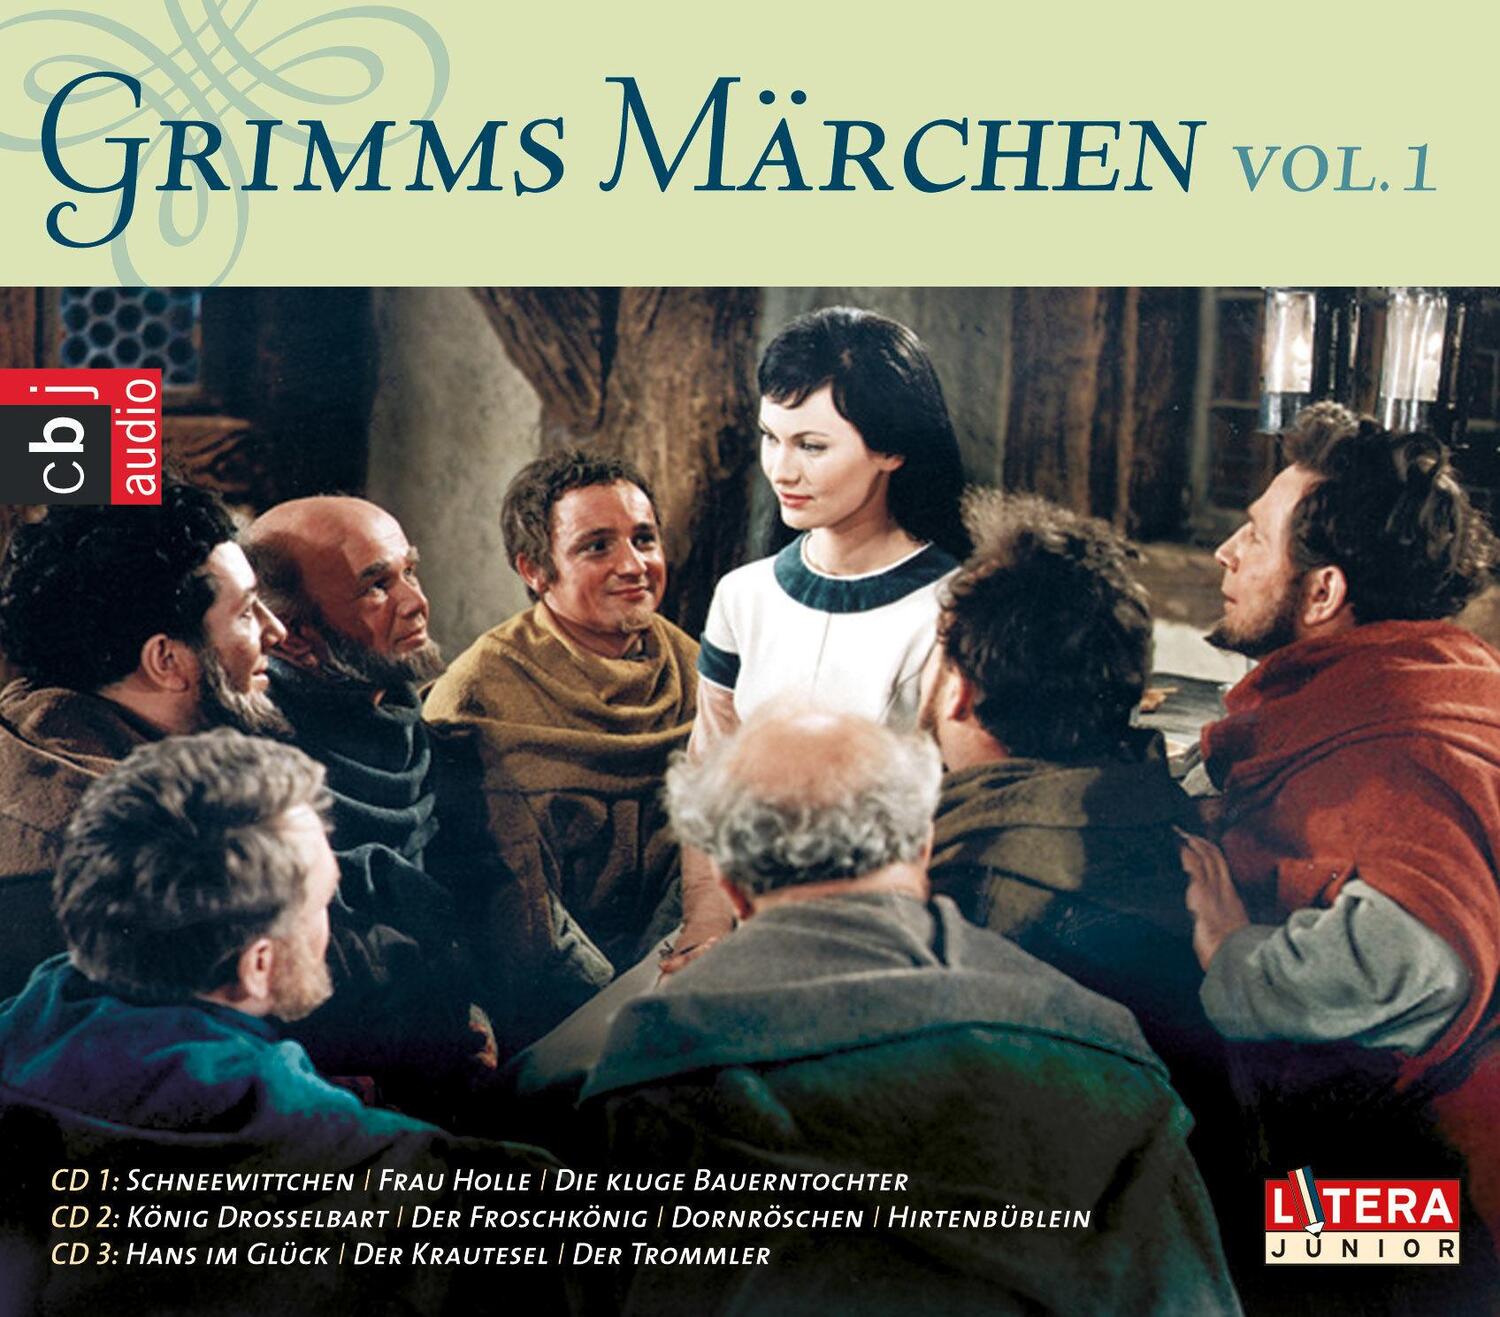 Bild: 9783837134223 | Grimms Märchen Box 1 | Jacob Grimm (u. a.) | Audio-CD | 3 Audio-CDs